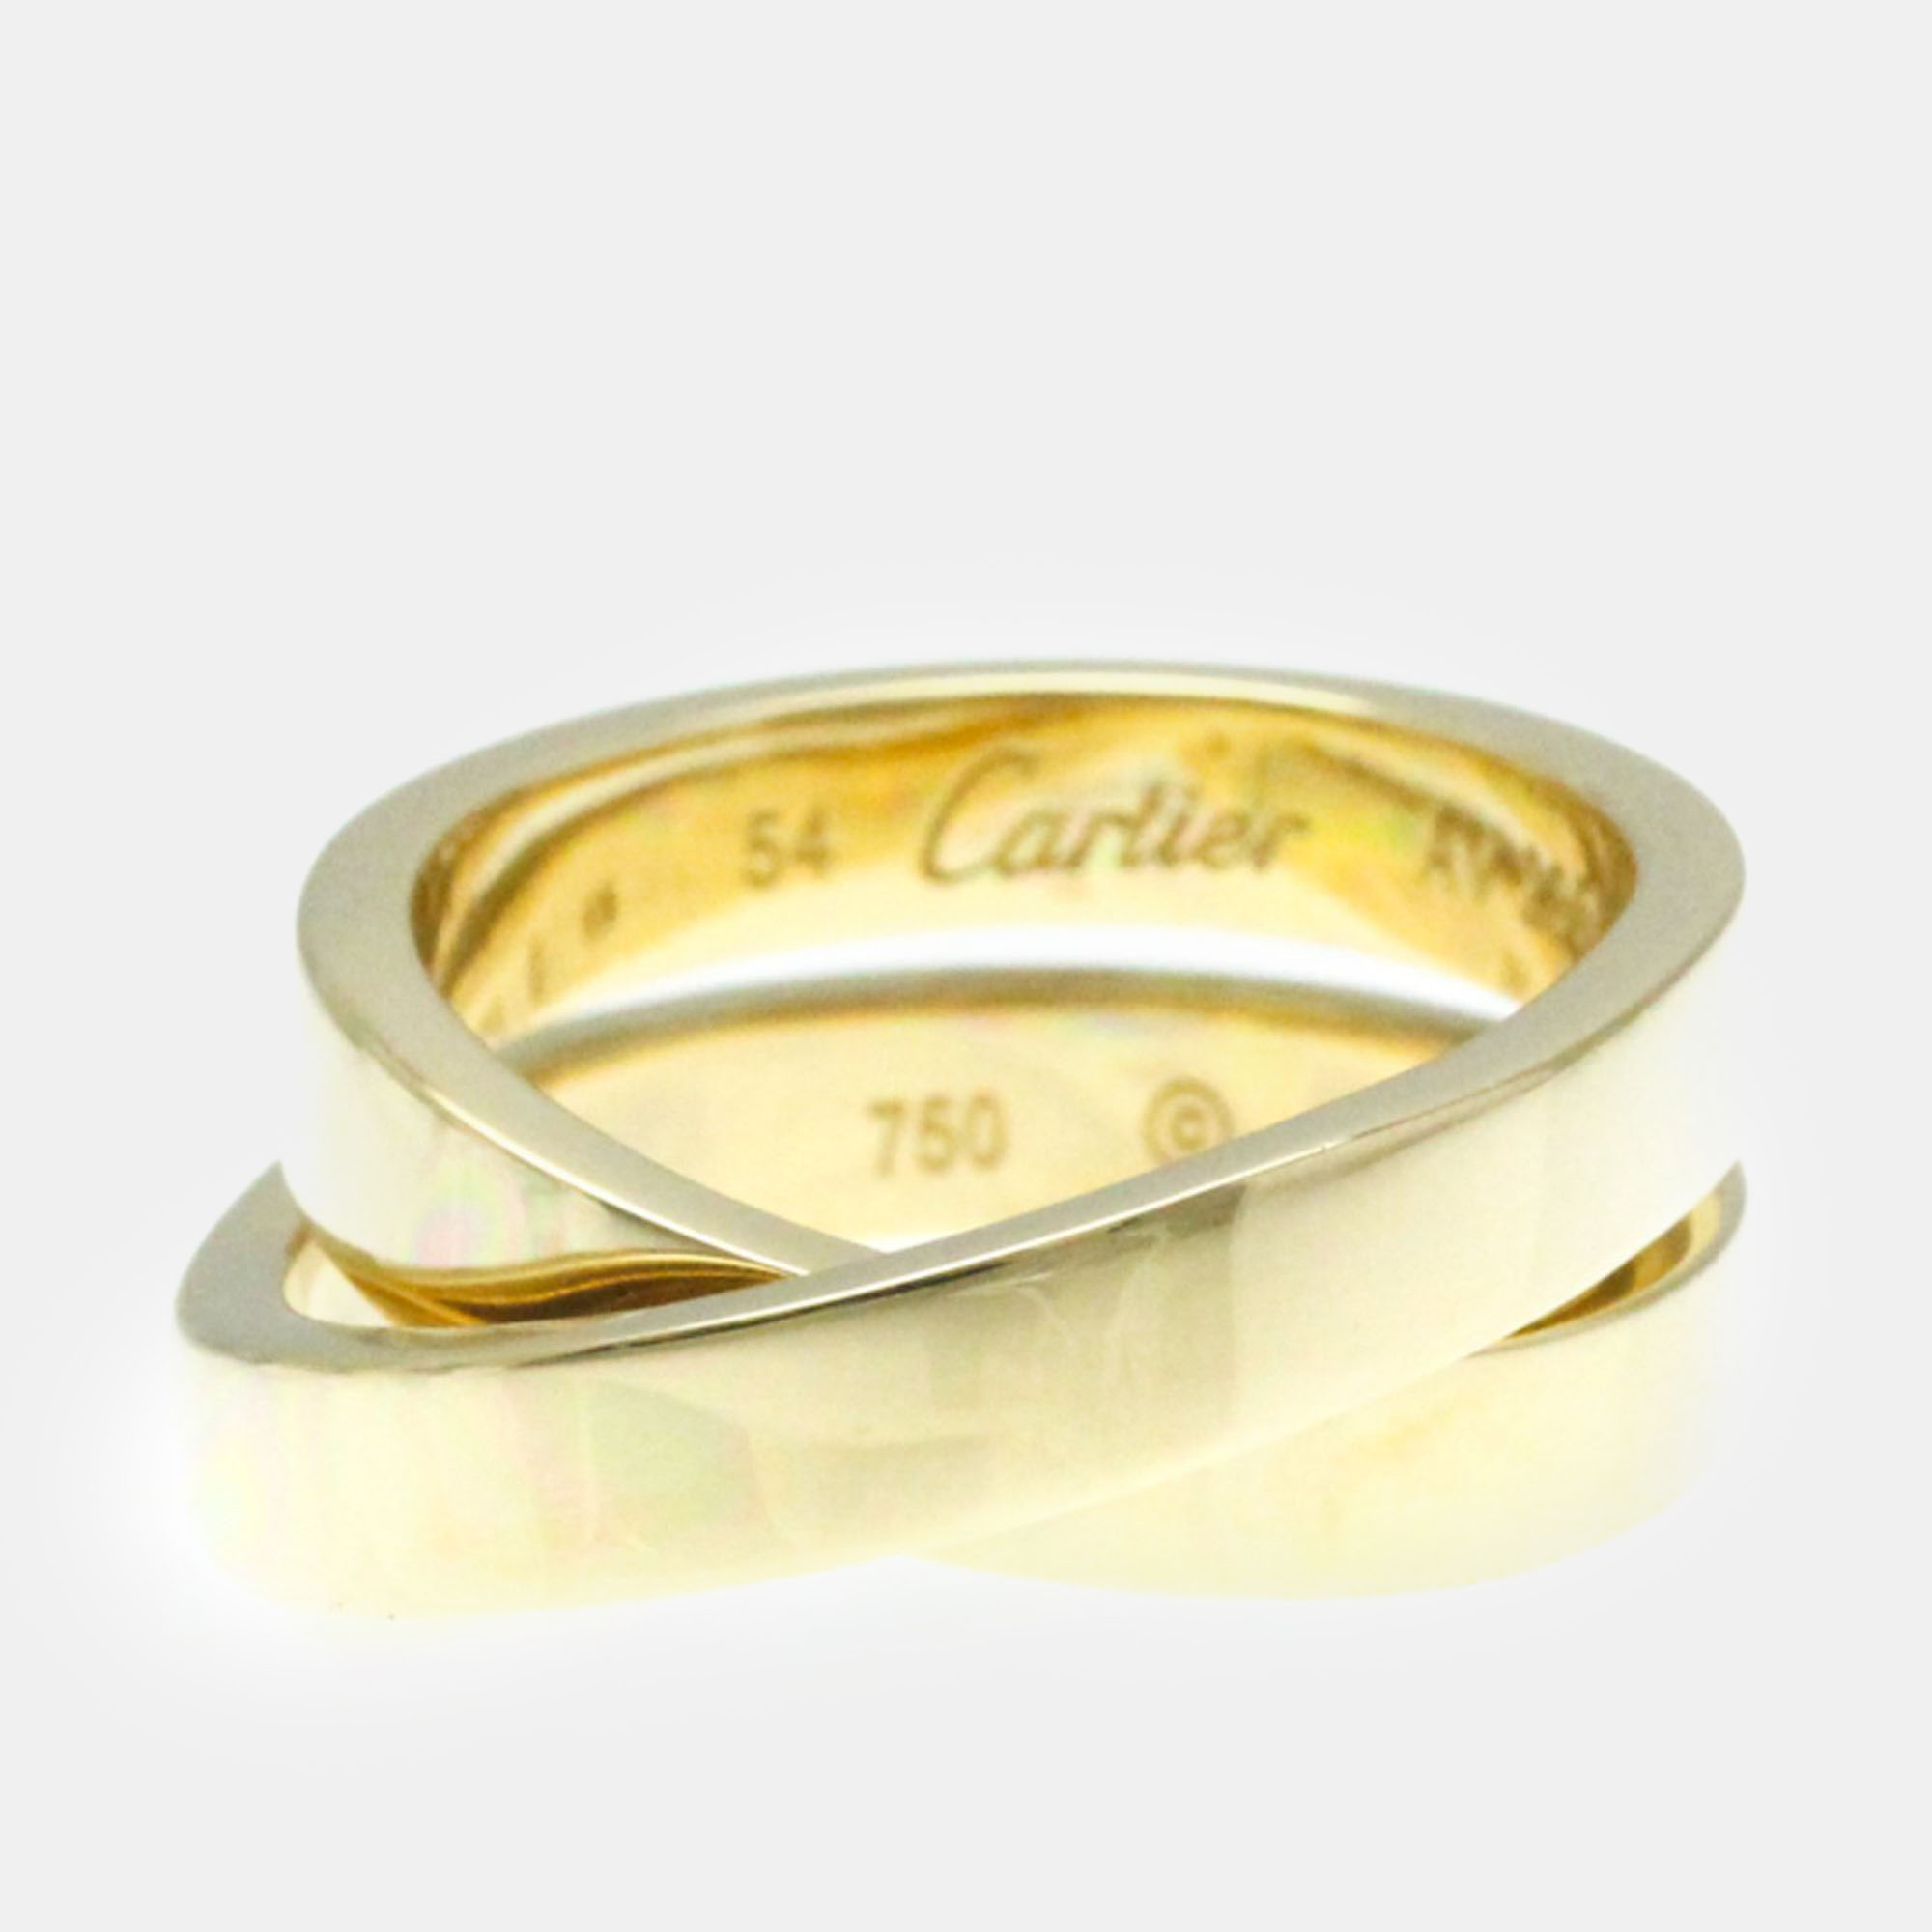 Cartier 18k yellow gold paris nouvelle vague band ring 54